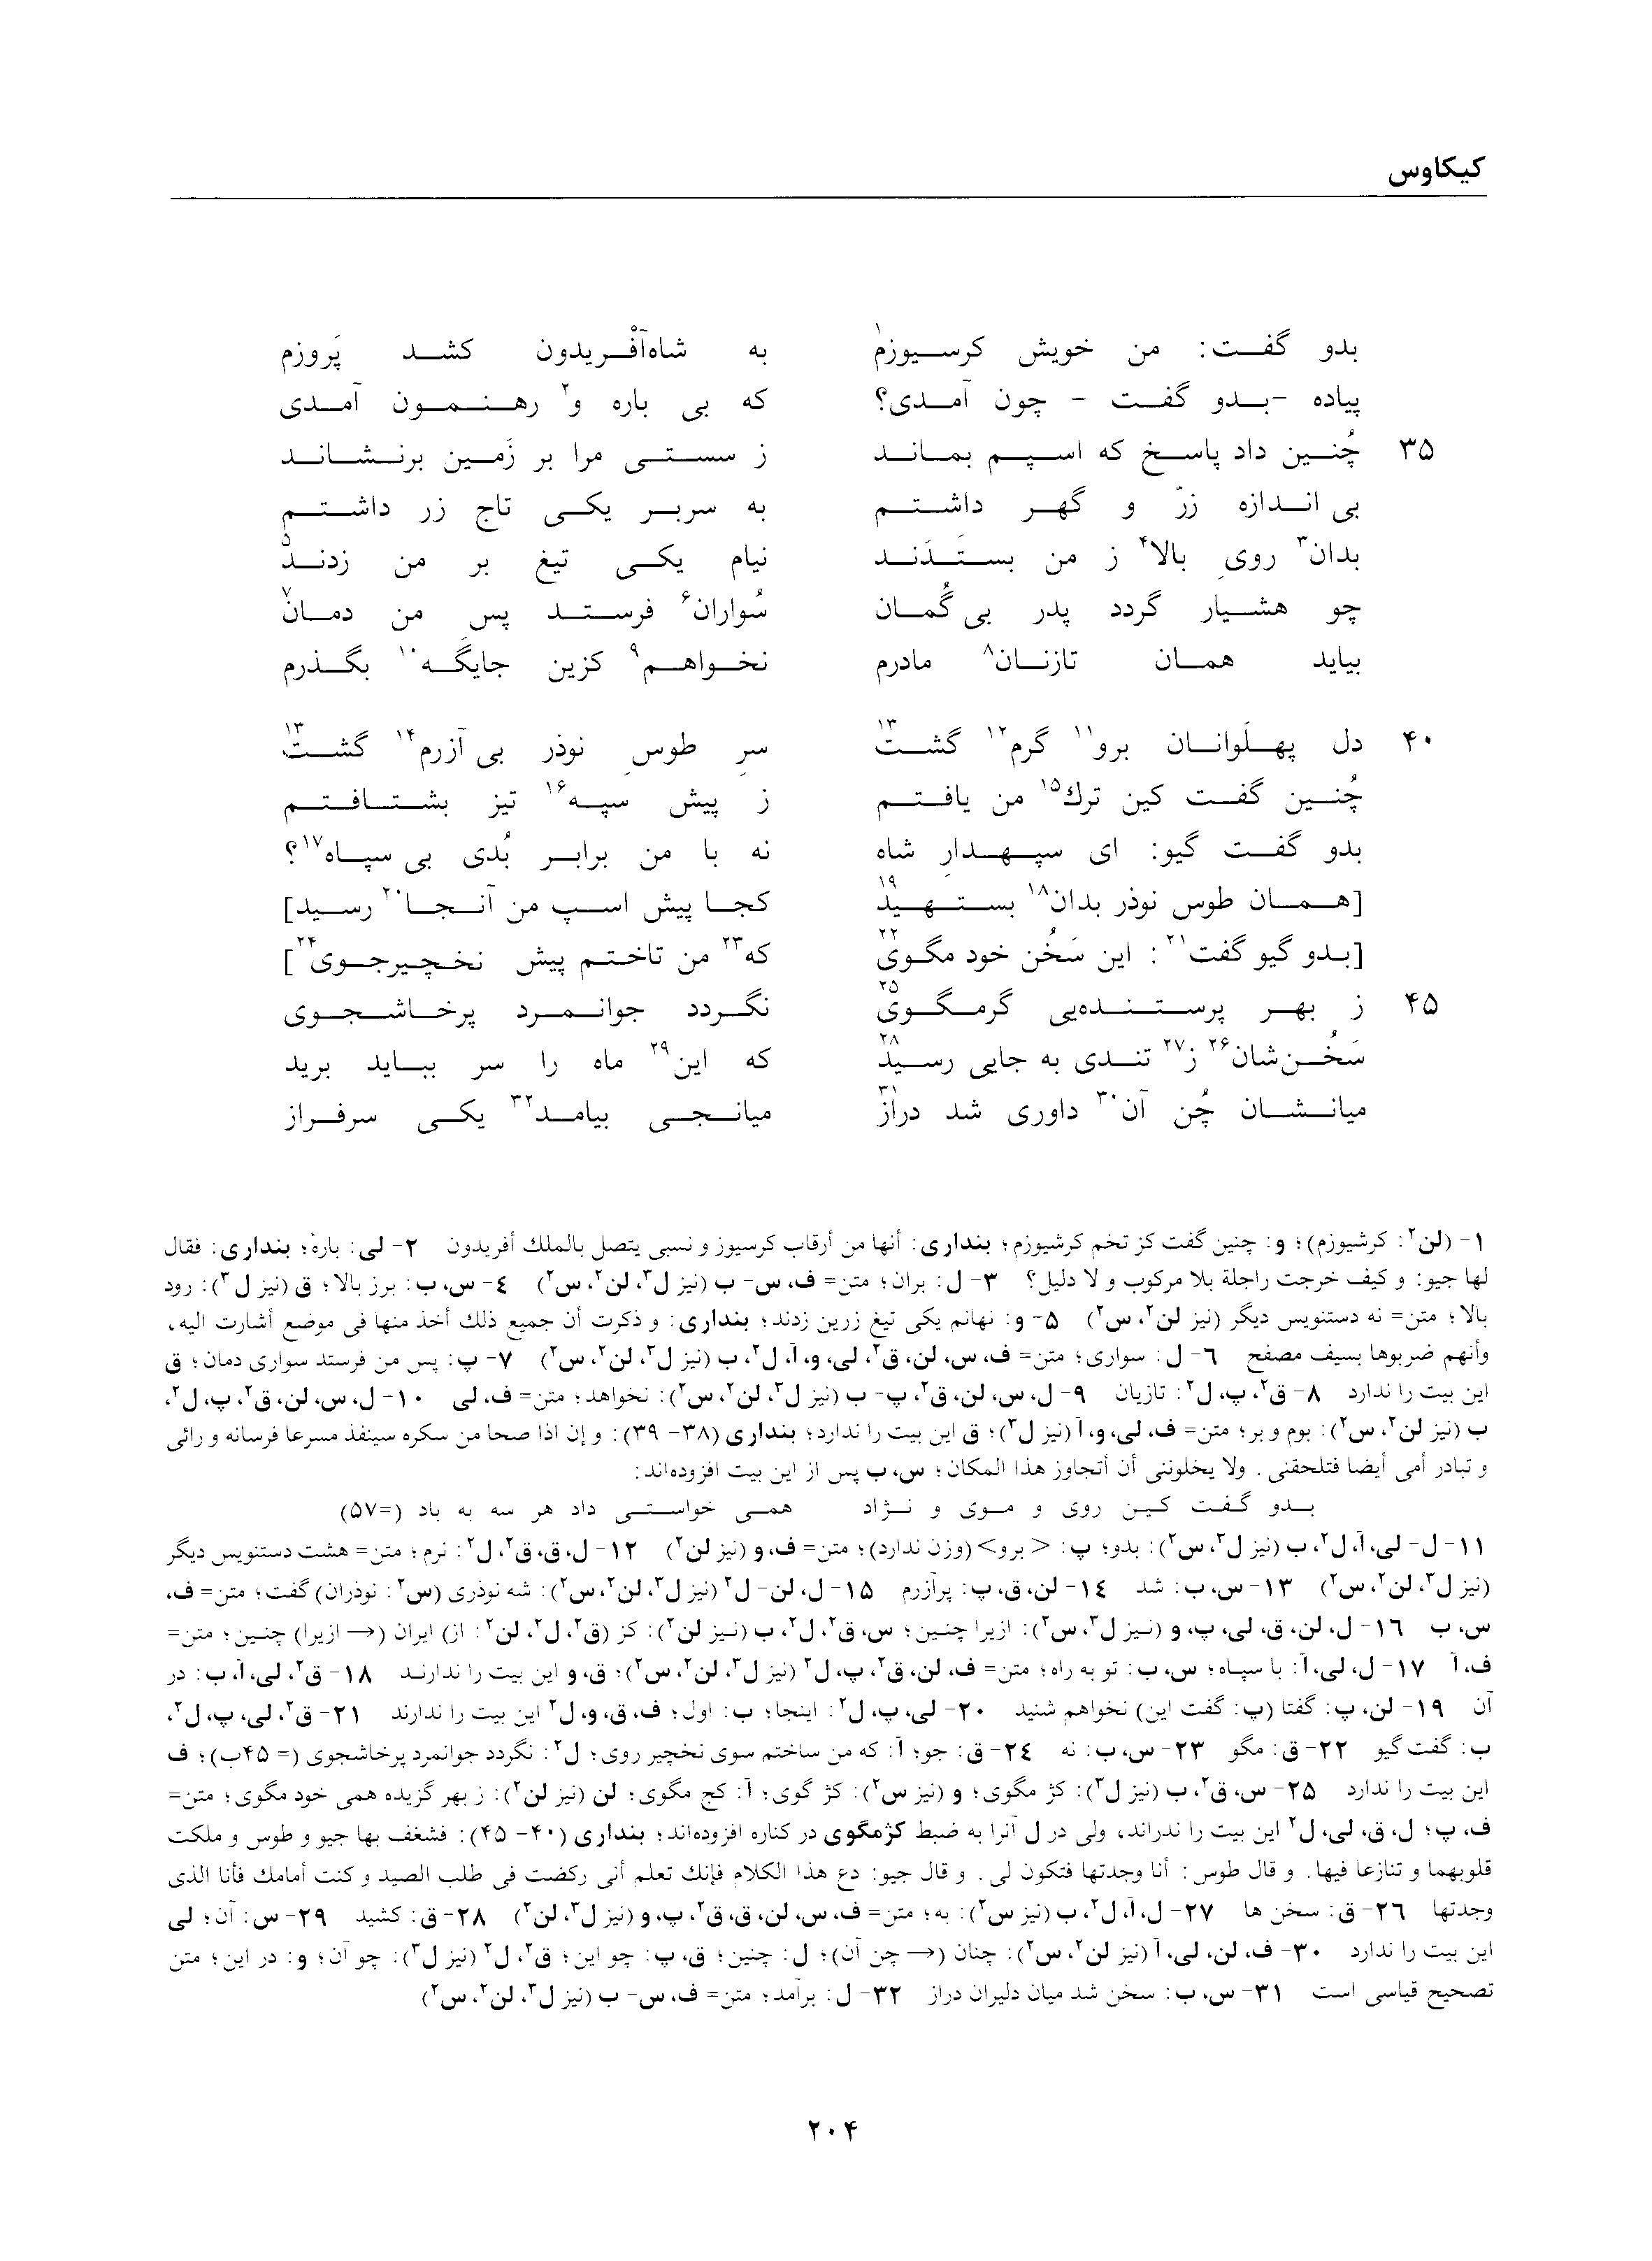 vol. 2, p. 204